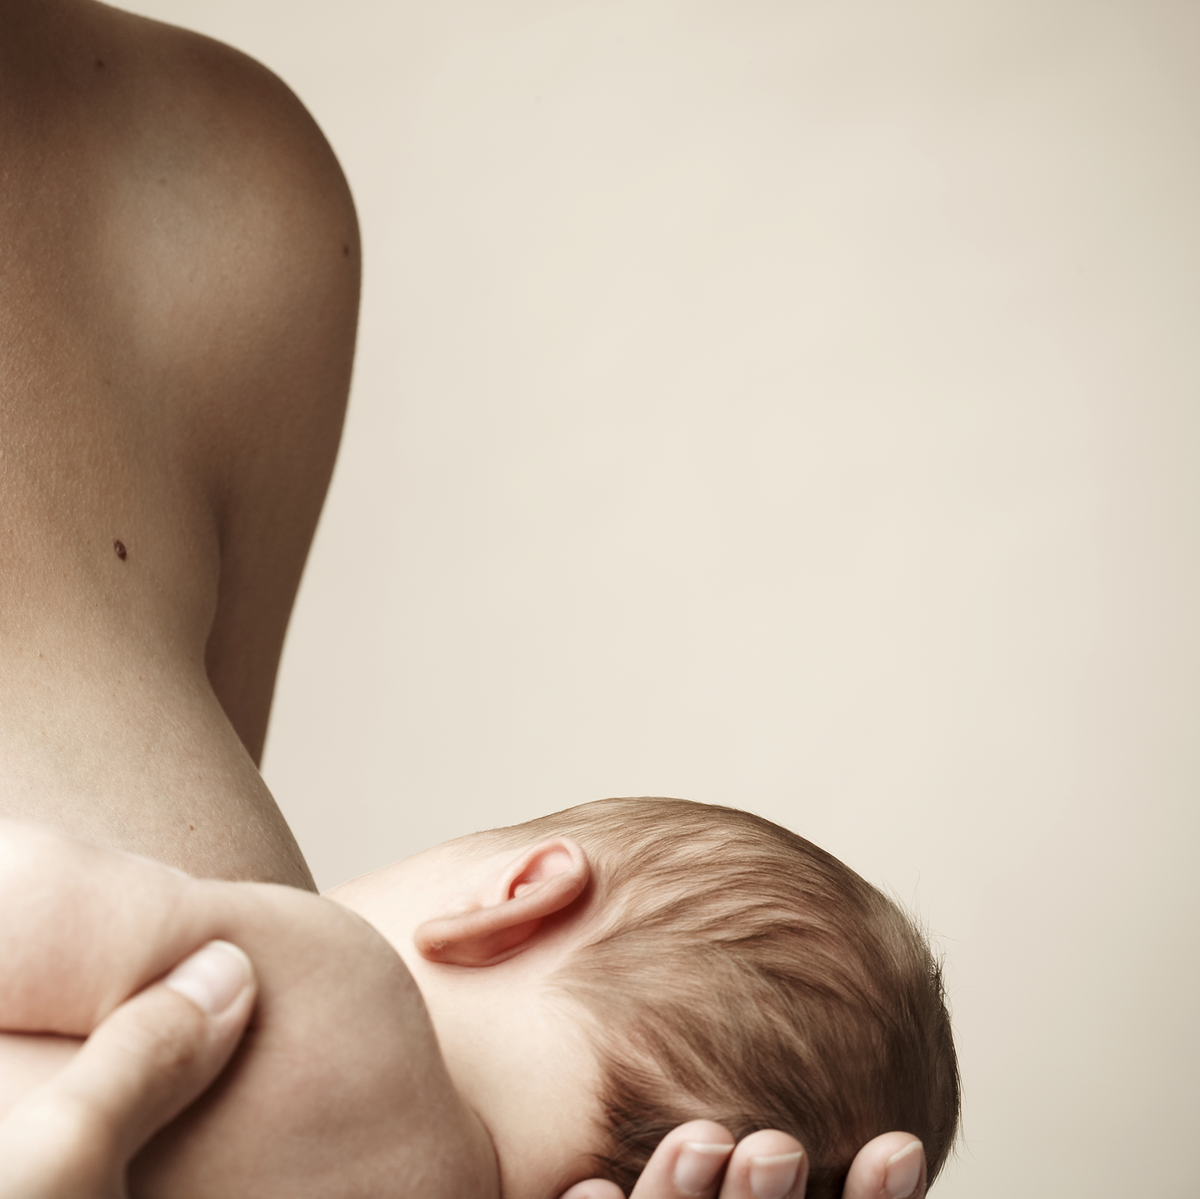 aap breastfeeding guidelines